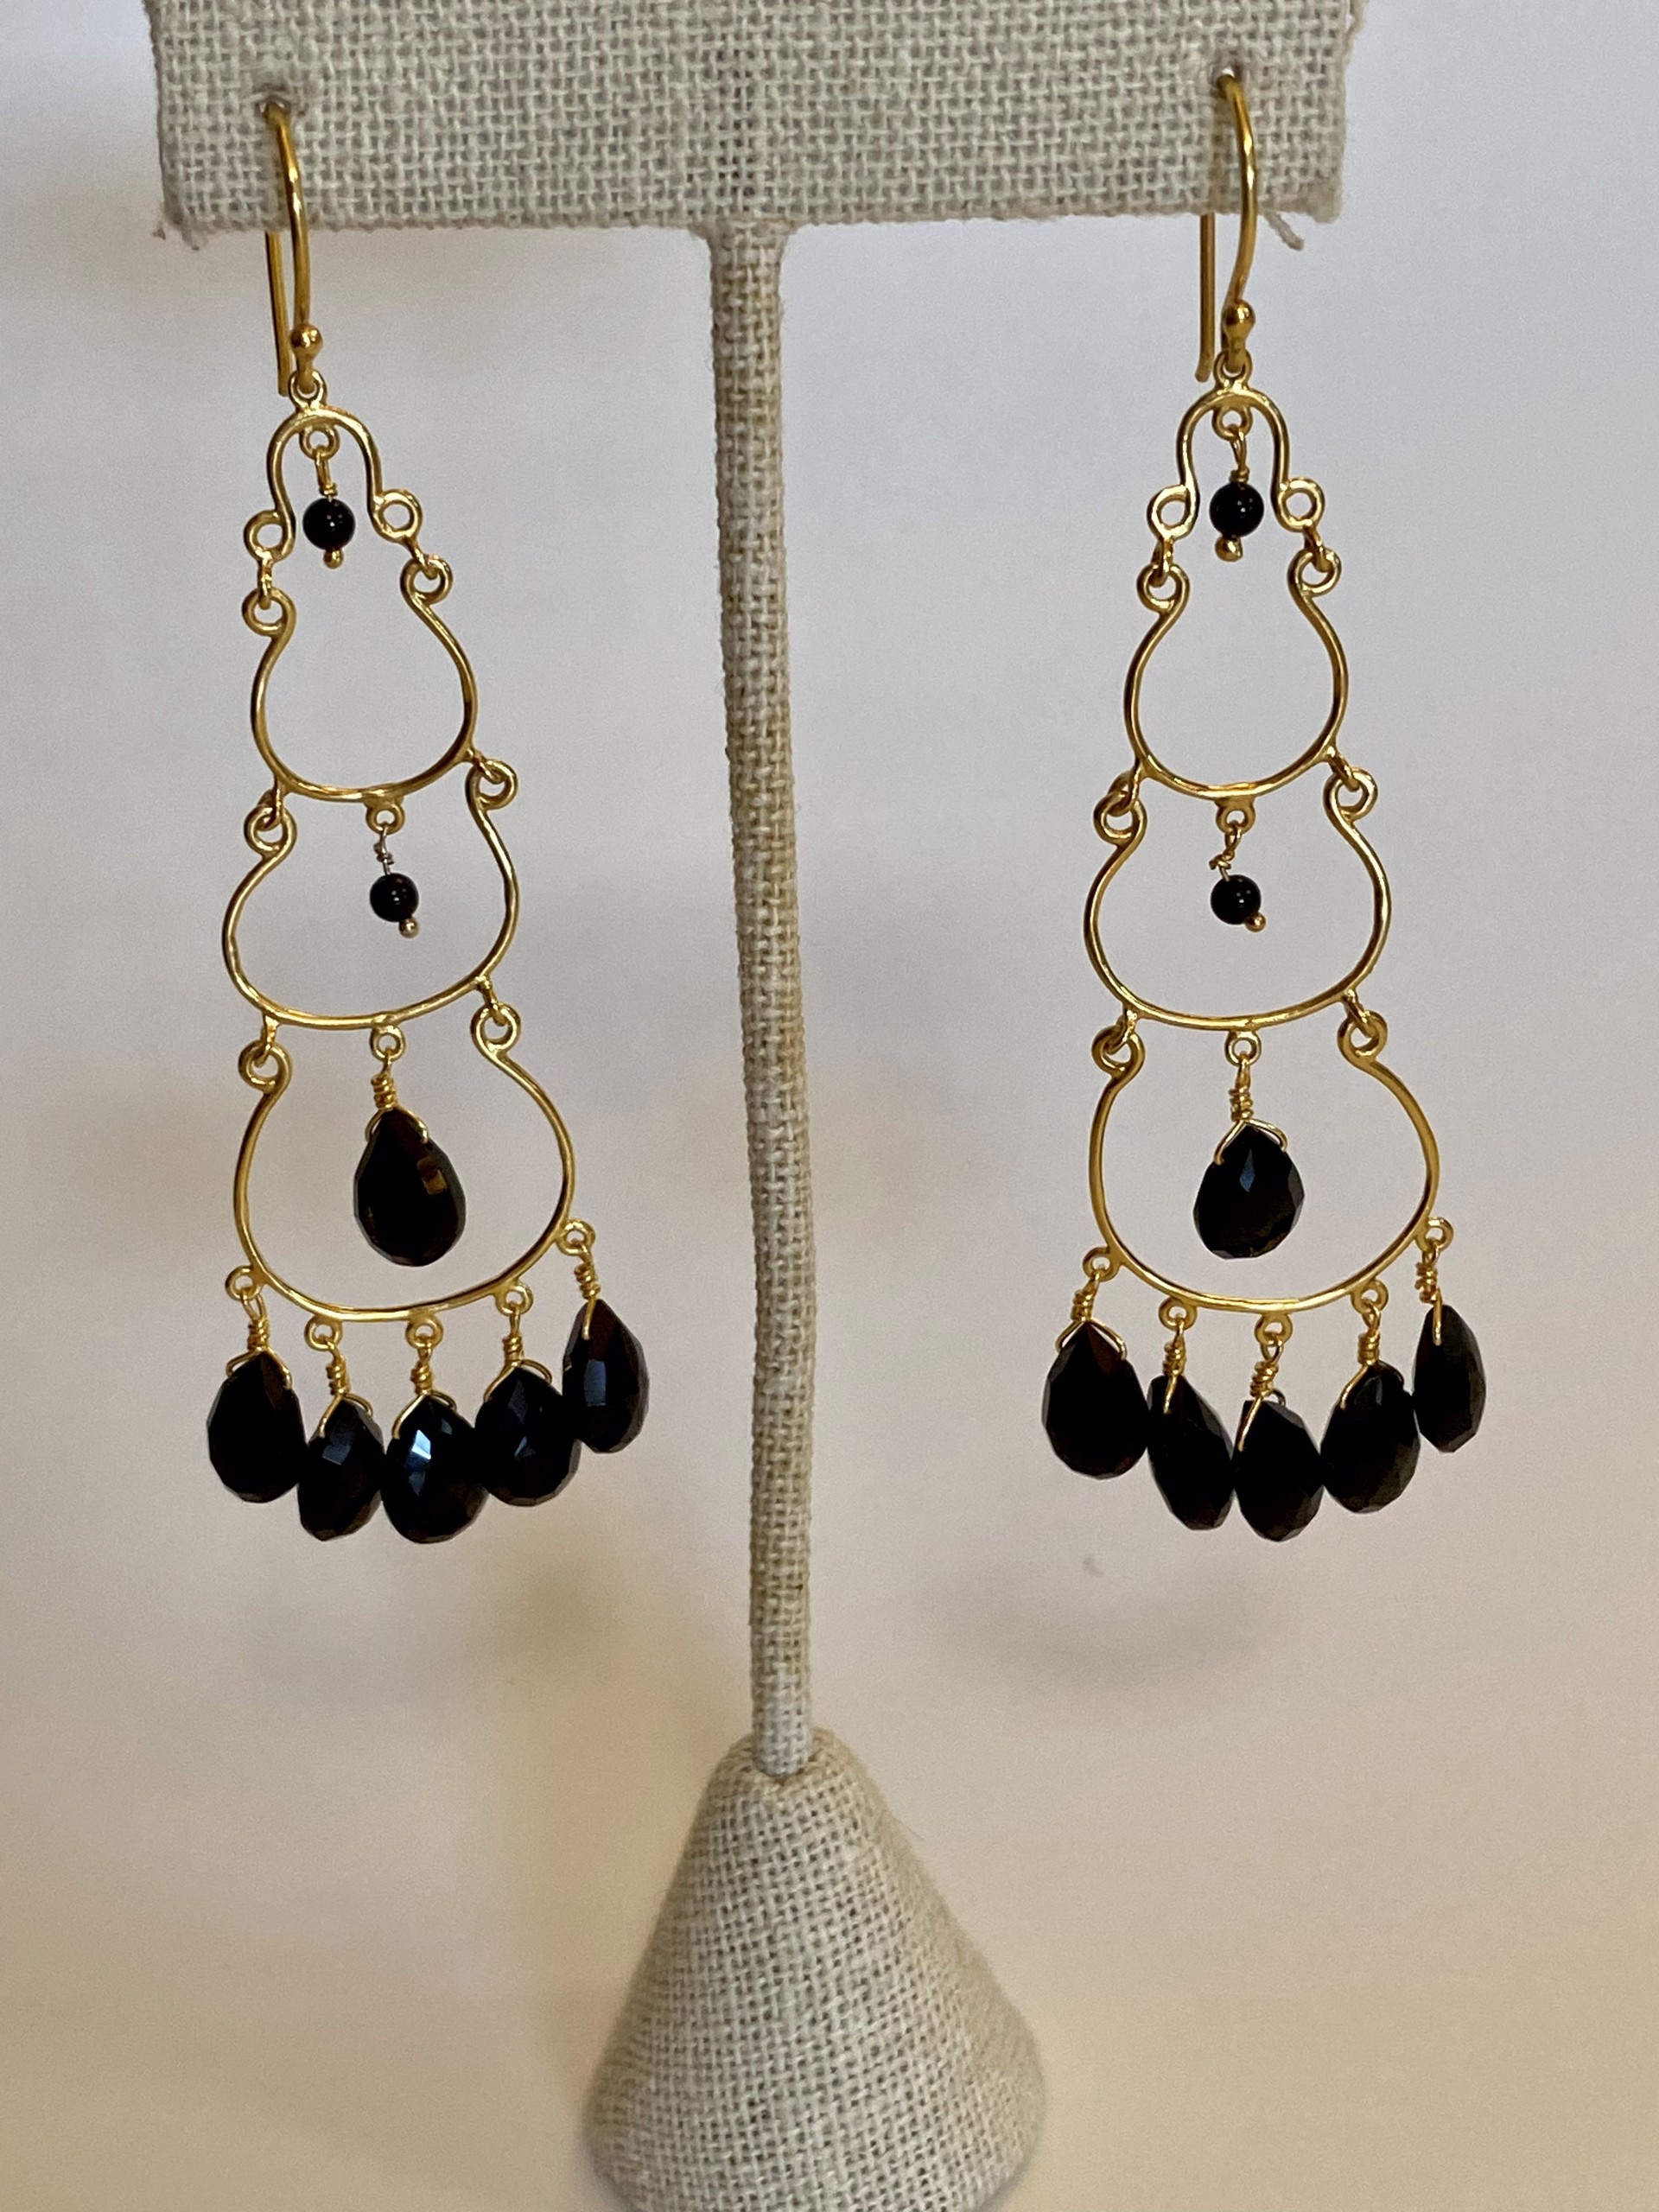 Three Tier Chandelier Earrings - Black Onyx by J.Catma